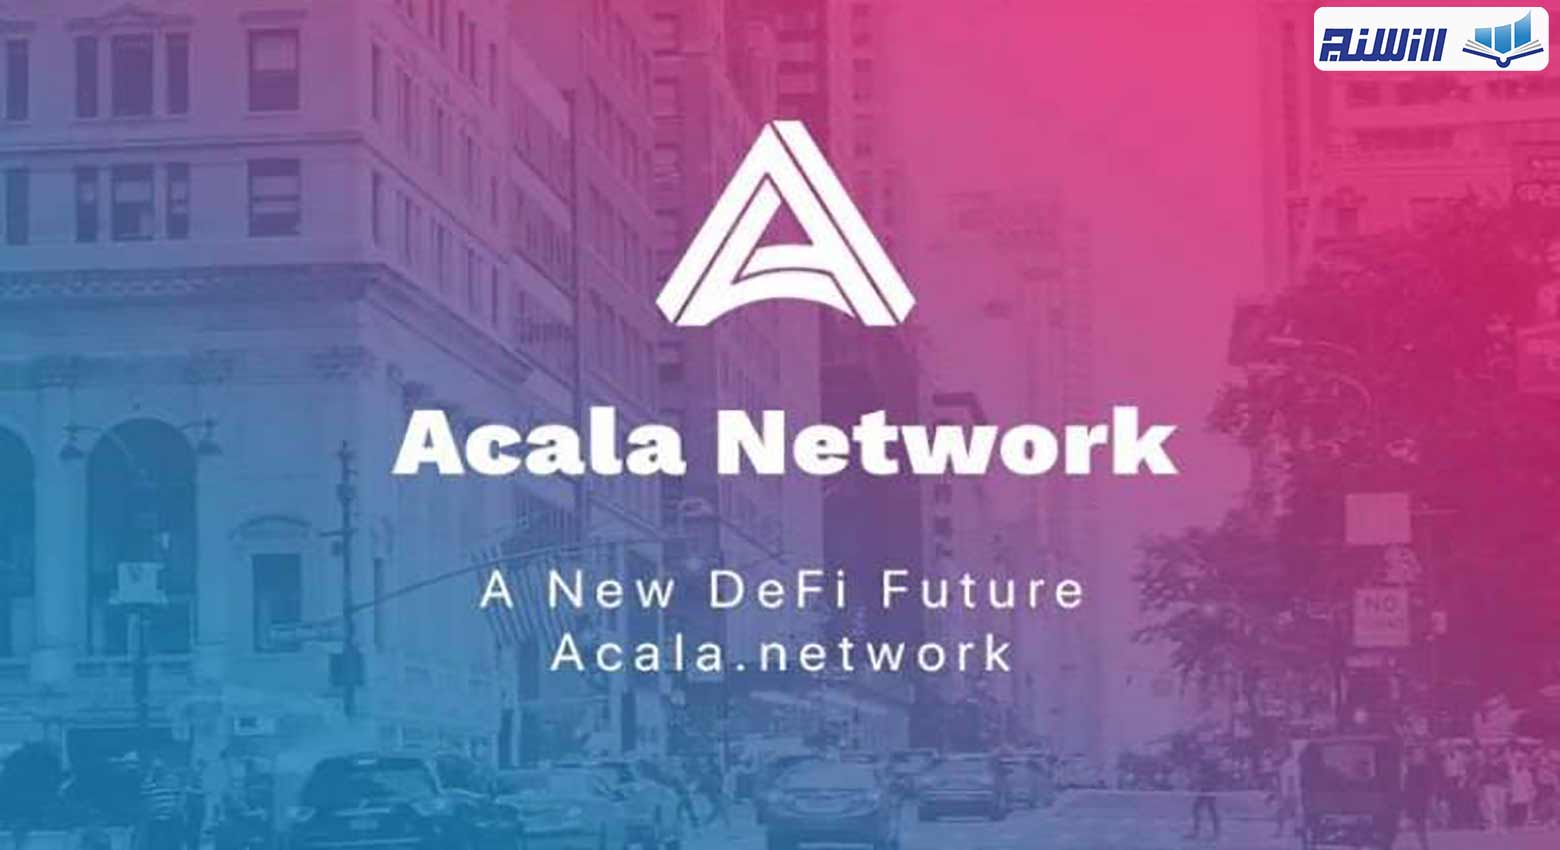 شبکه آکالا چیست؟